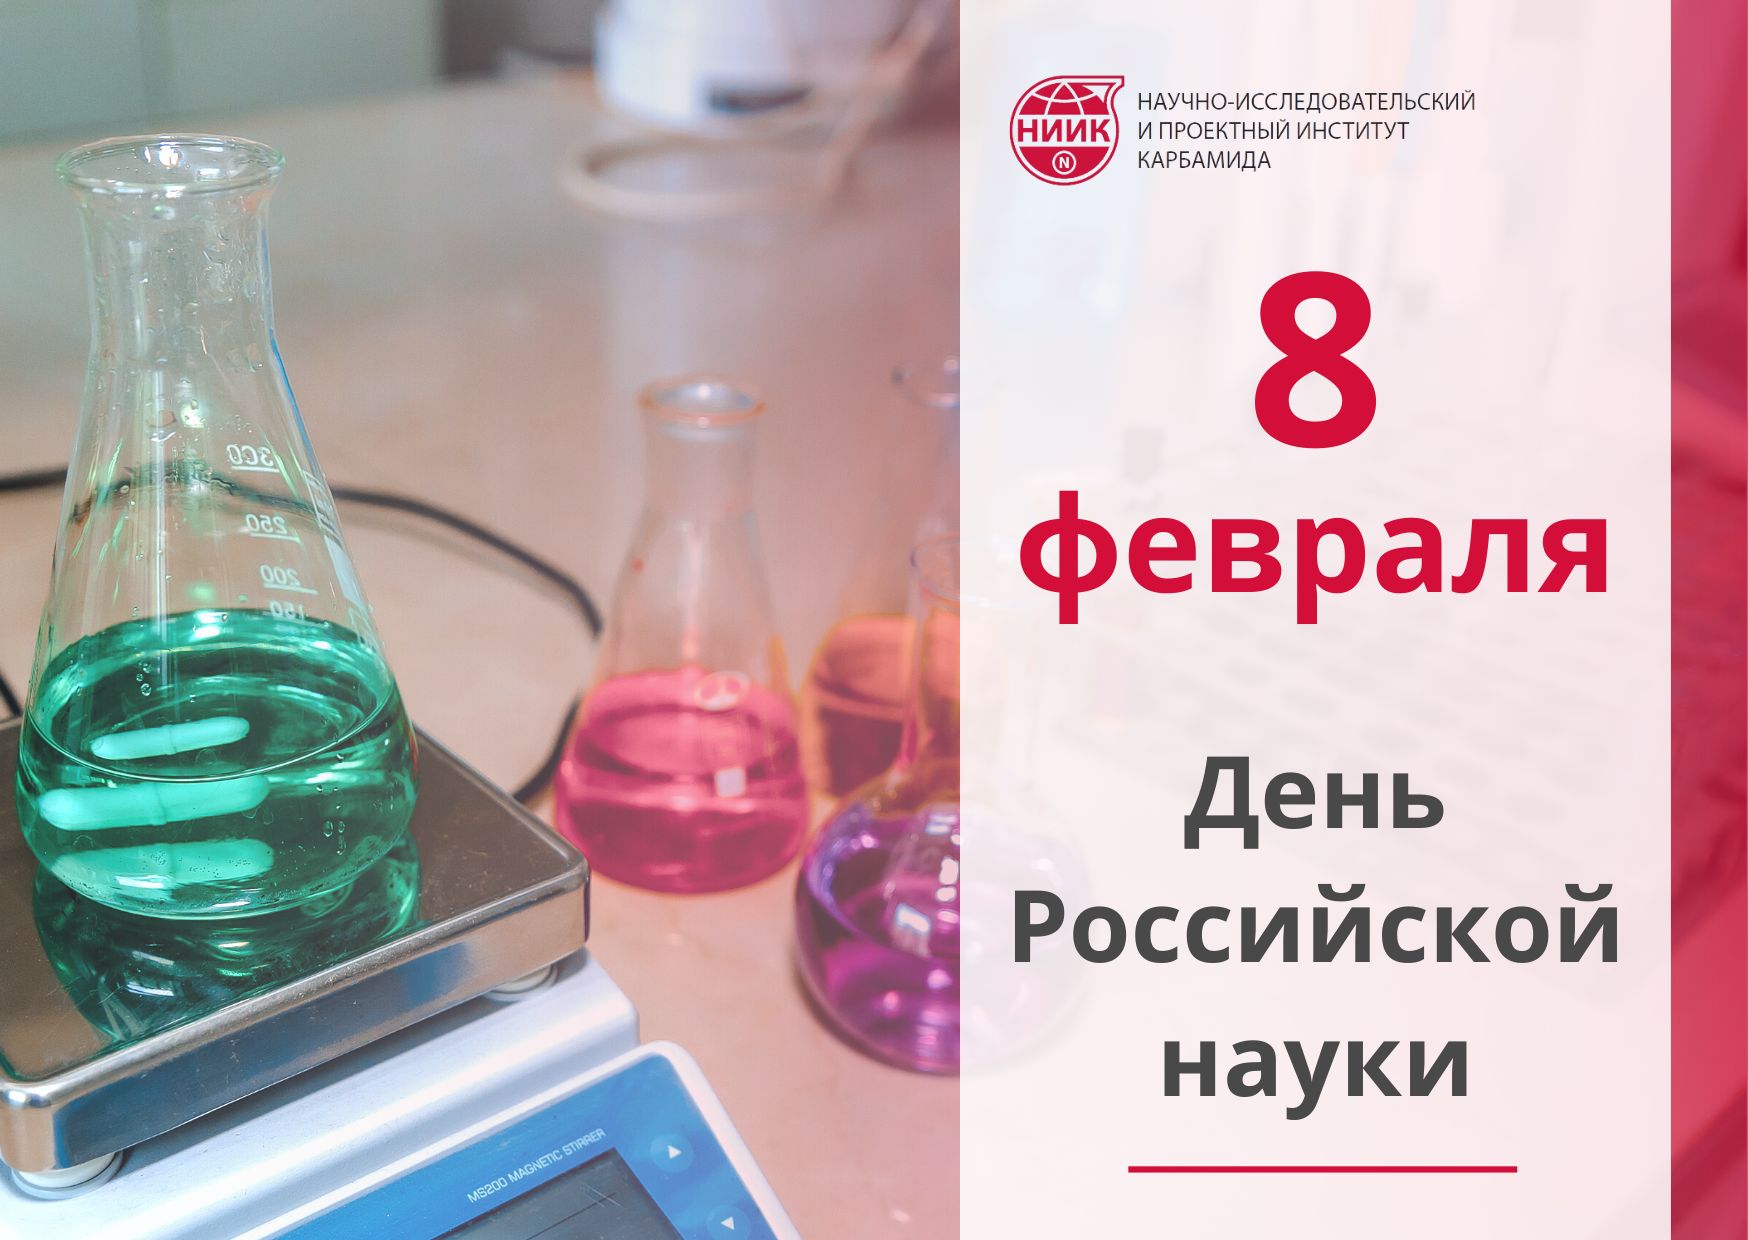 8 февраля российское научное сообщество отмечает свой профессиональный праздник — День российской науки